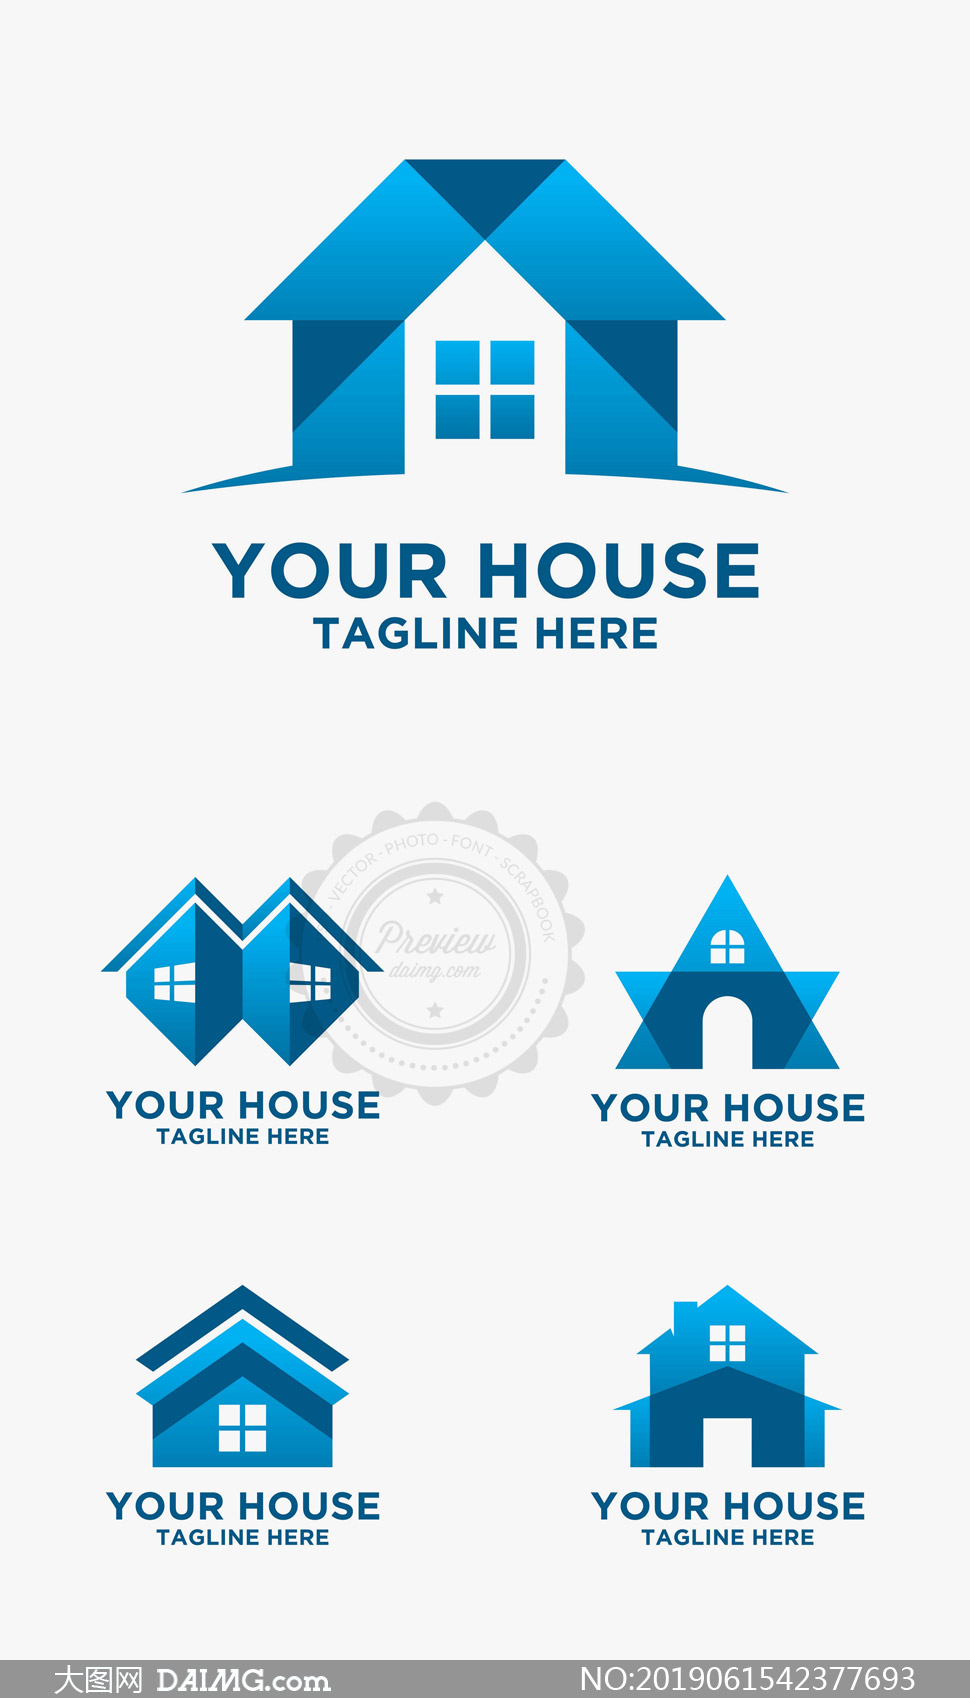 蓝色房子元素标志设计创意矢量素材